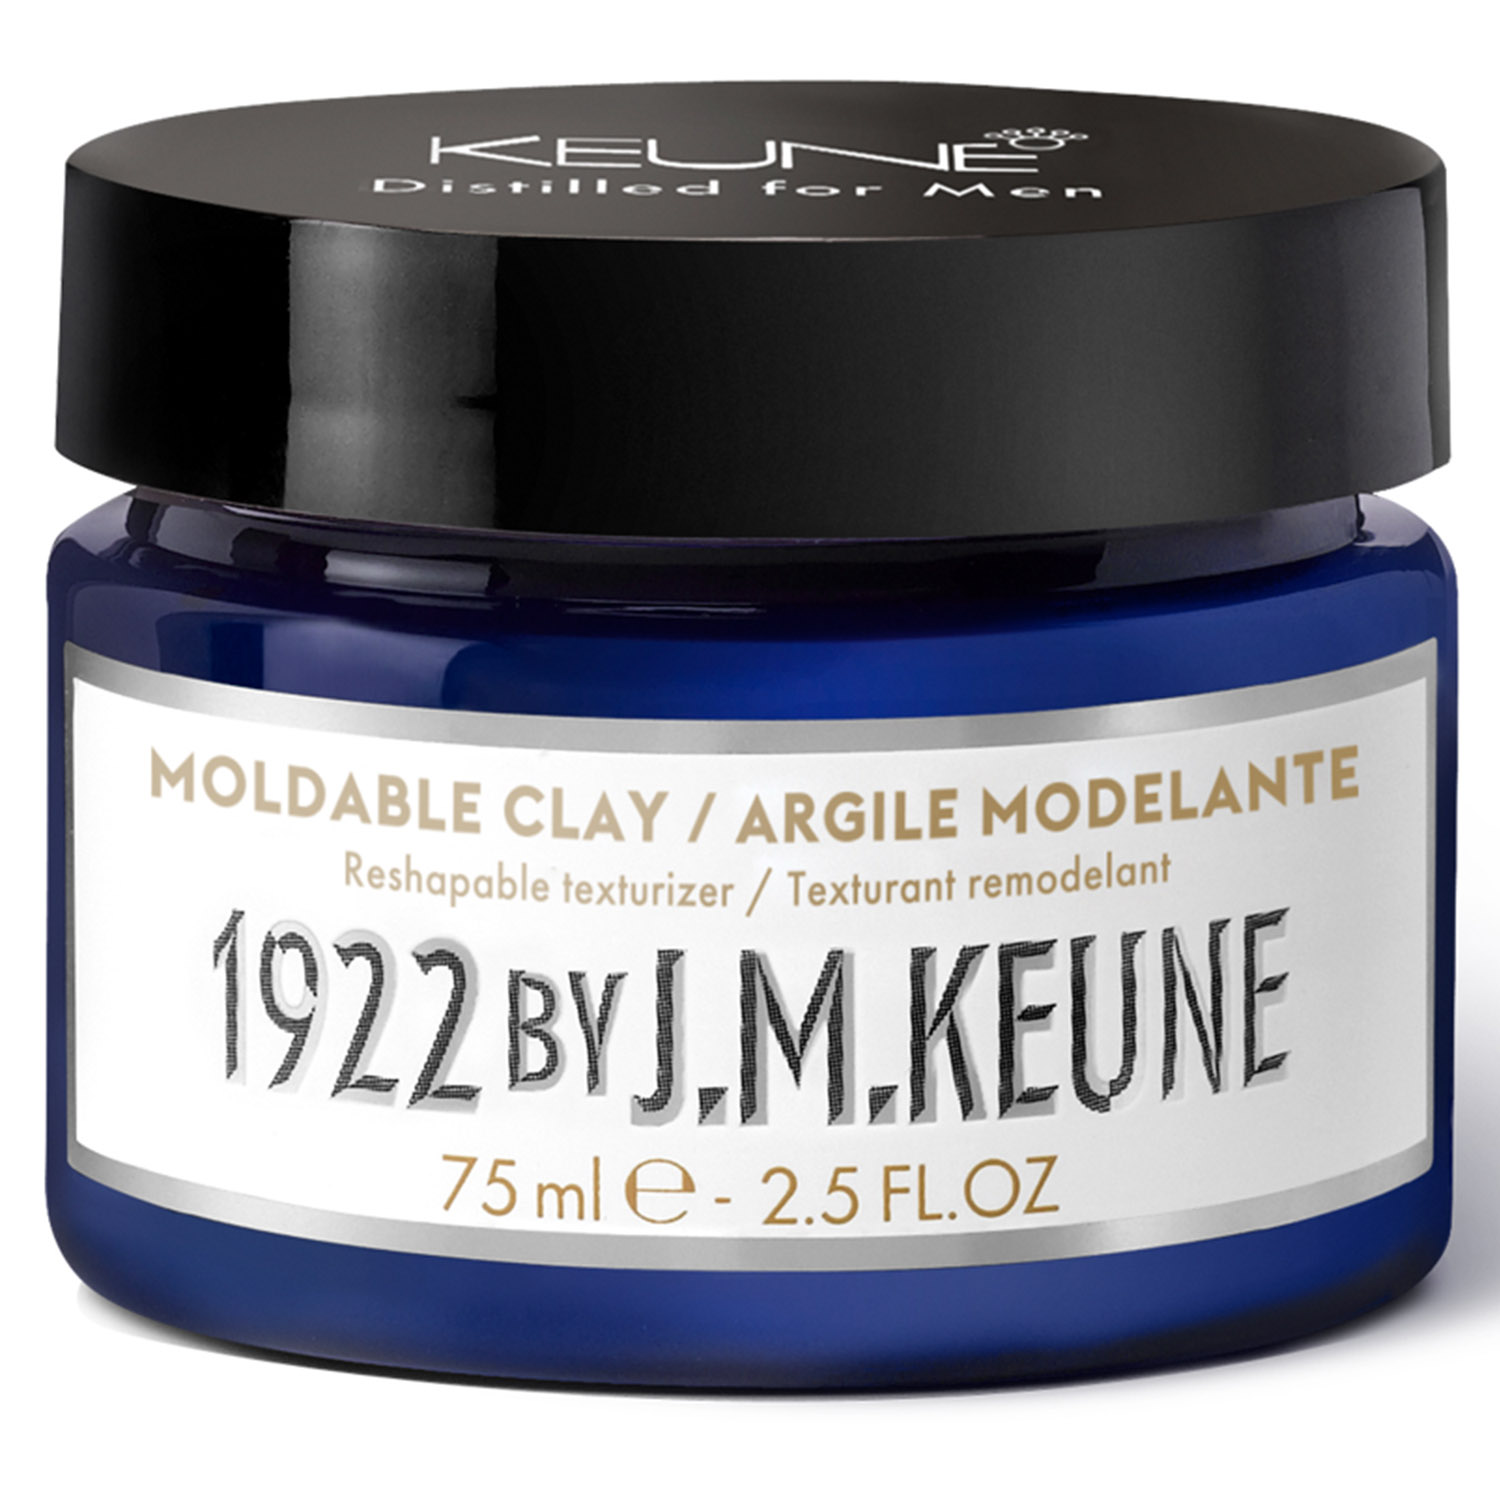 Keune Моделирующая глина для укладки волос Moldable Clay, 75 мл (Keune, 1922 by J.M. Keune) моделирующая глина keune 1922 moldable clay 75 мл